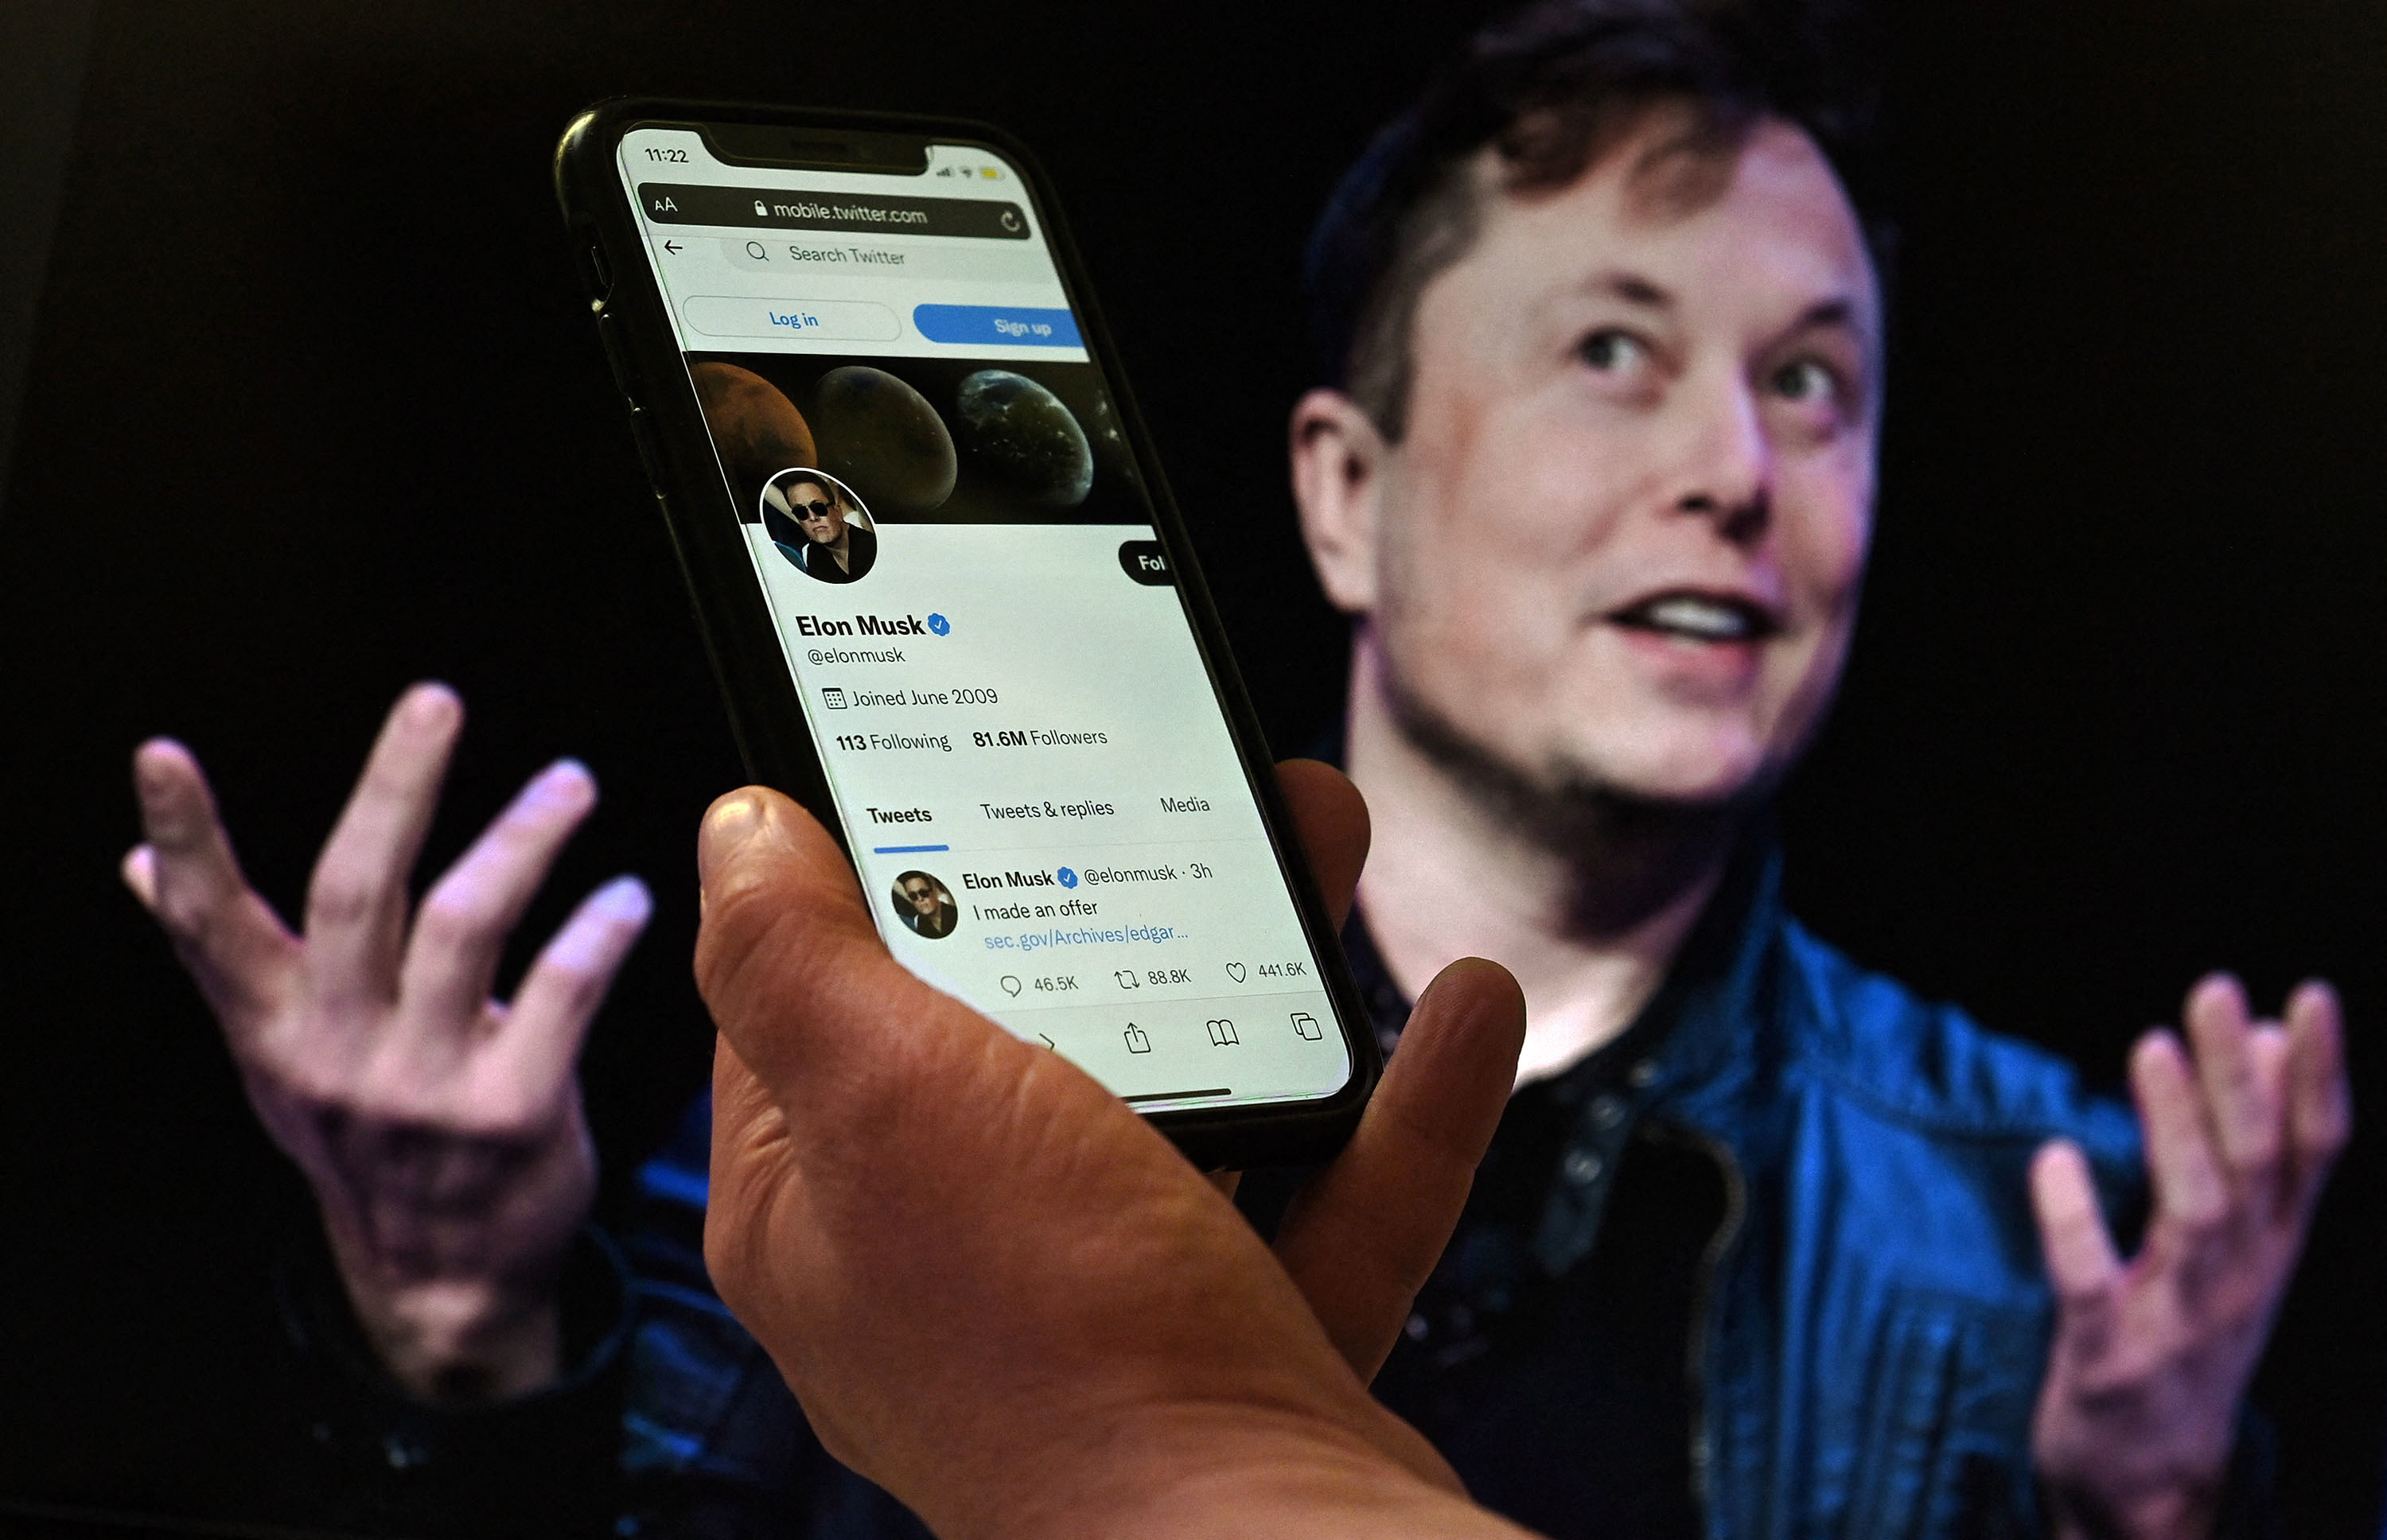 Una pantalla de teléfono muestra la cuenta de Twitter de Elon Musk con una foto suya de fondo, el 14 de abril de 2022, en Washington, DC. - Elon Musk retiró su acuerdo de compra de Twitter el 8 de julio de 2022, acusando a la compañía de hacer declaraciones "engañosas" sobre el número de cuentas falsas, según una presentación regulatoria.